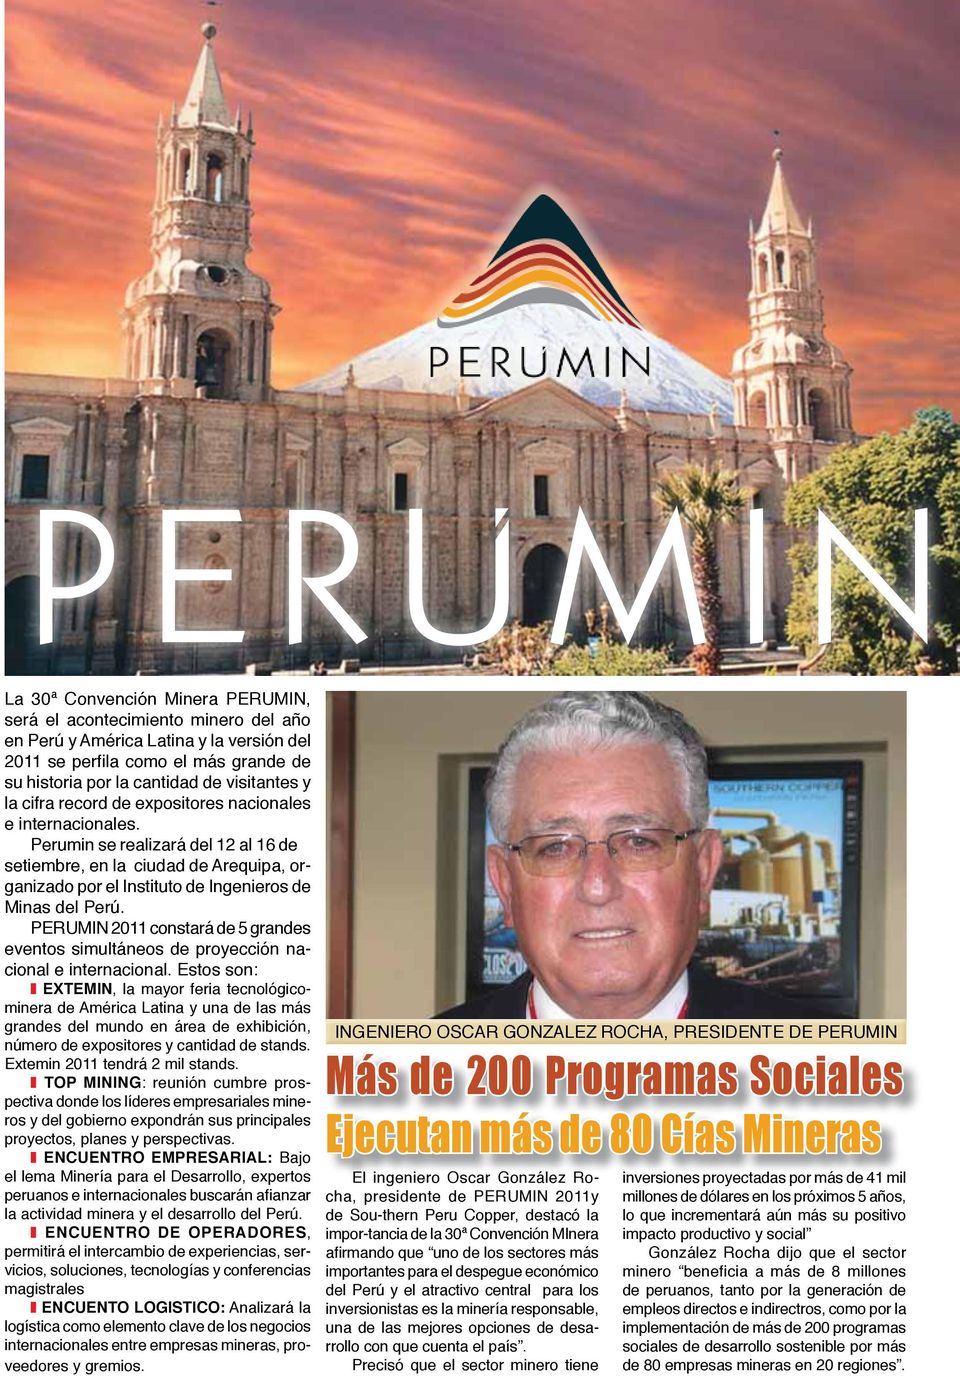 Perumin se realizará del 12 al 16 de setiembre, en la ciudad de Arequipa, organizado por el Instituto de Ingenieros de Minas del Perú.